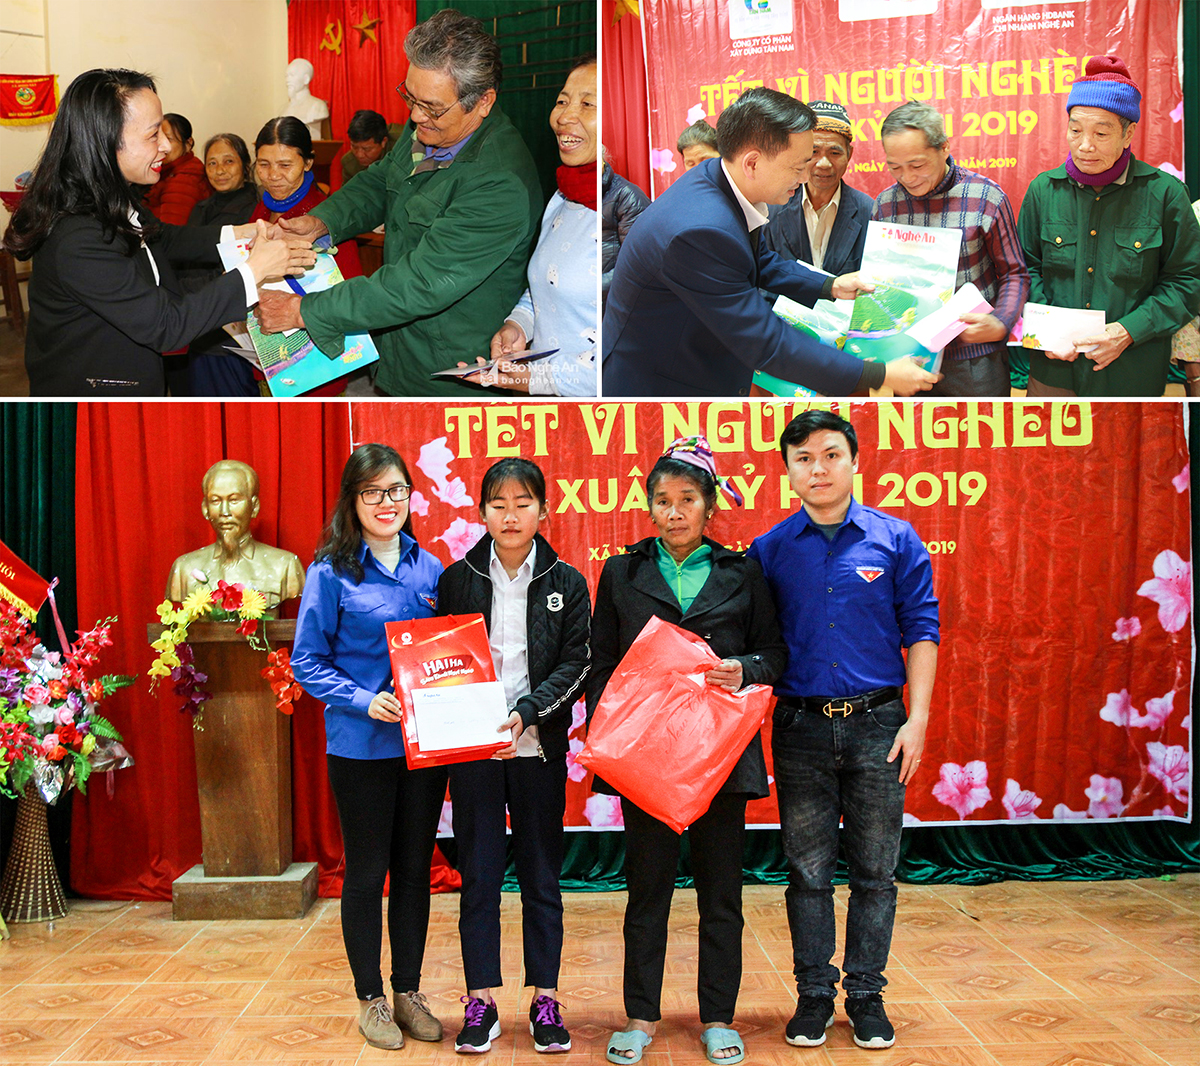 Dịp Tết Nguyên đán Kỷ Hợi 2019, Báo Nghệ An đã kêu gọi các đơn vị, doanh nghiệp cùng đồng hành, trao gần 500 suất quà Tết cho các hộ nghèo trên địa bàn tỉnh Nghệ An.